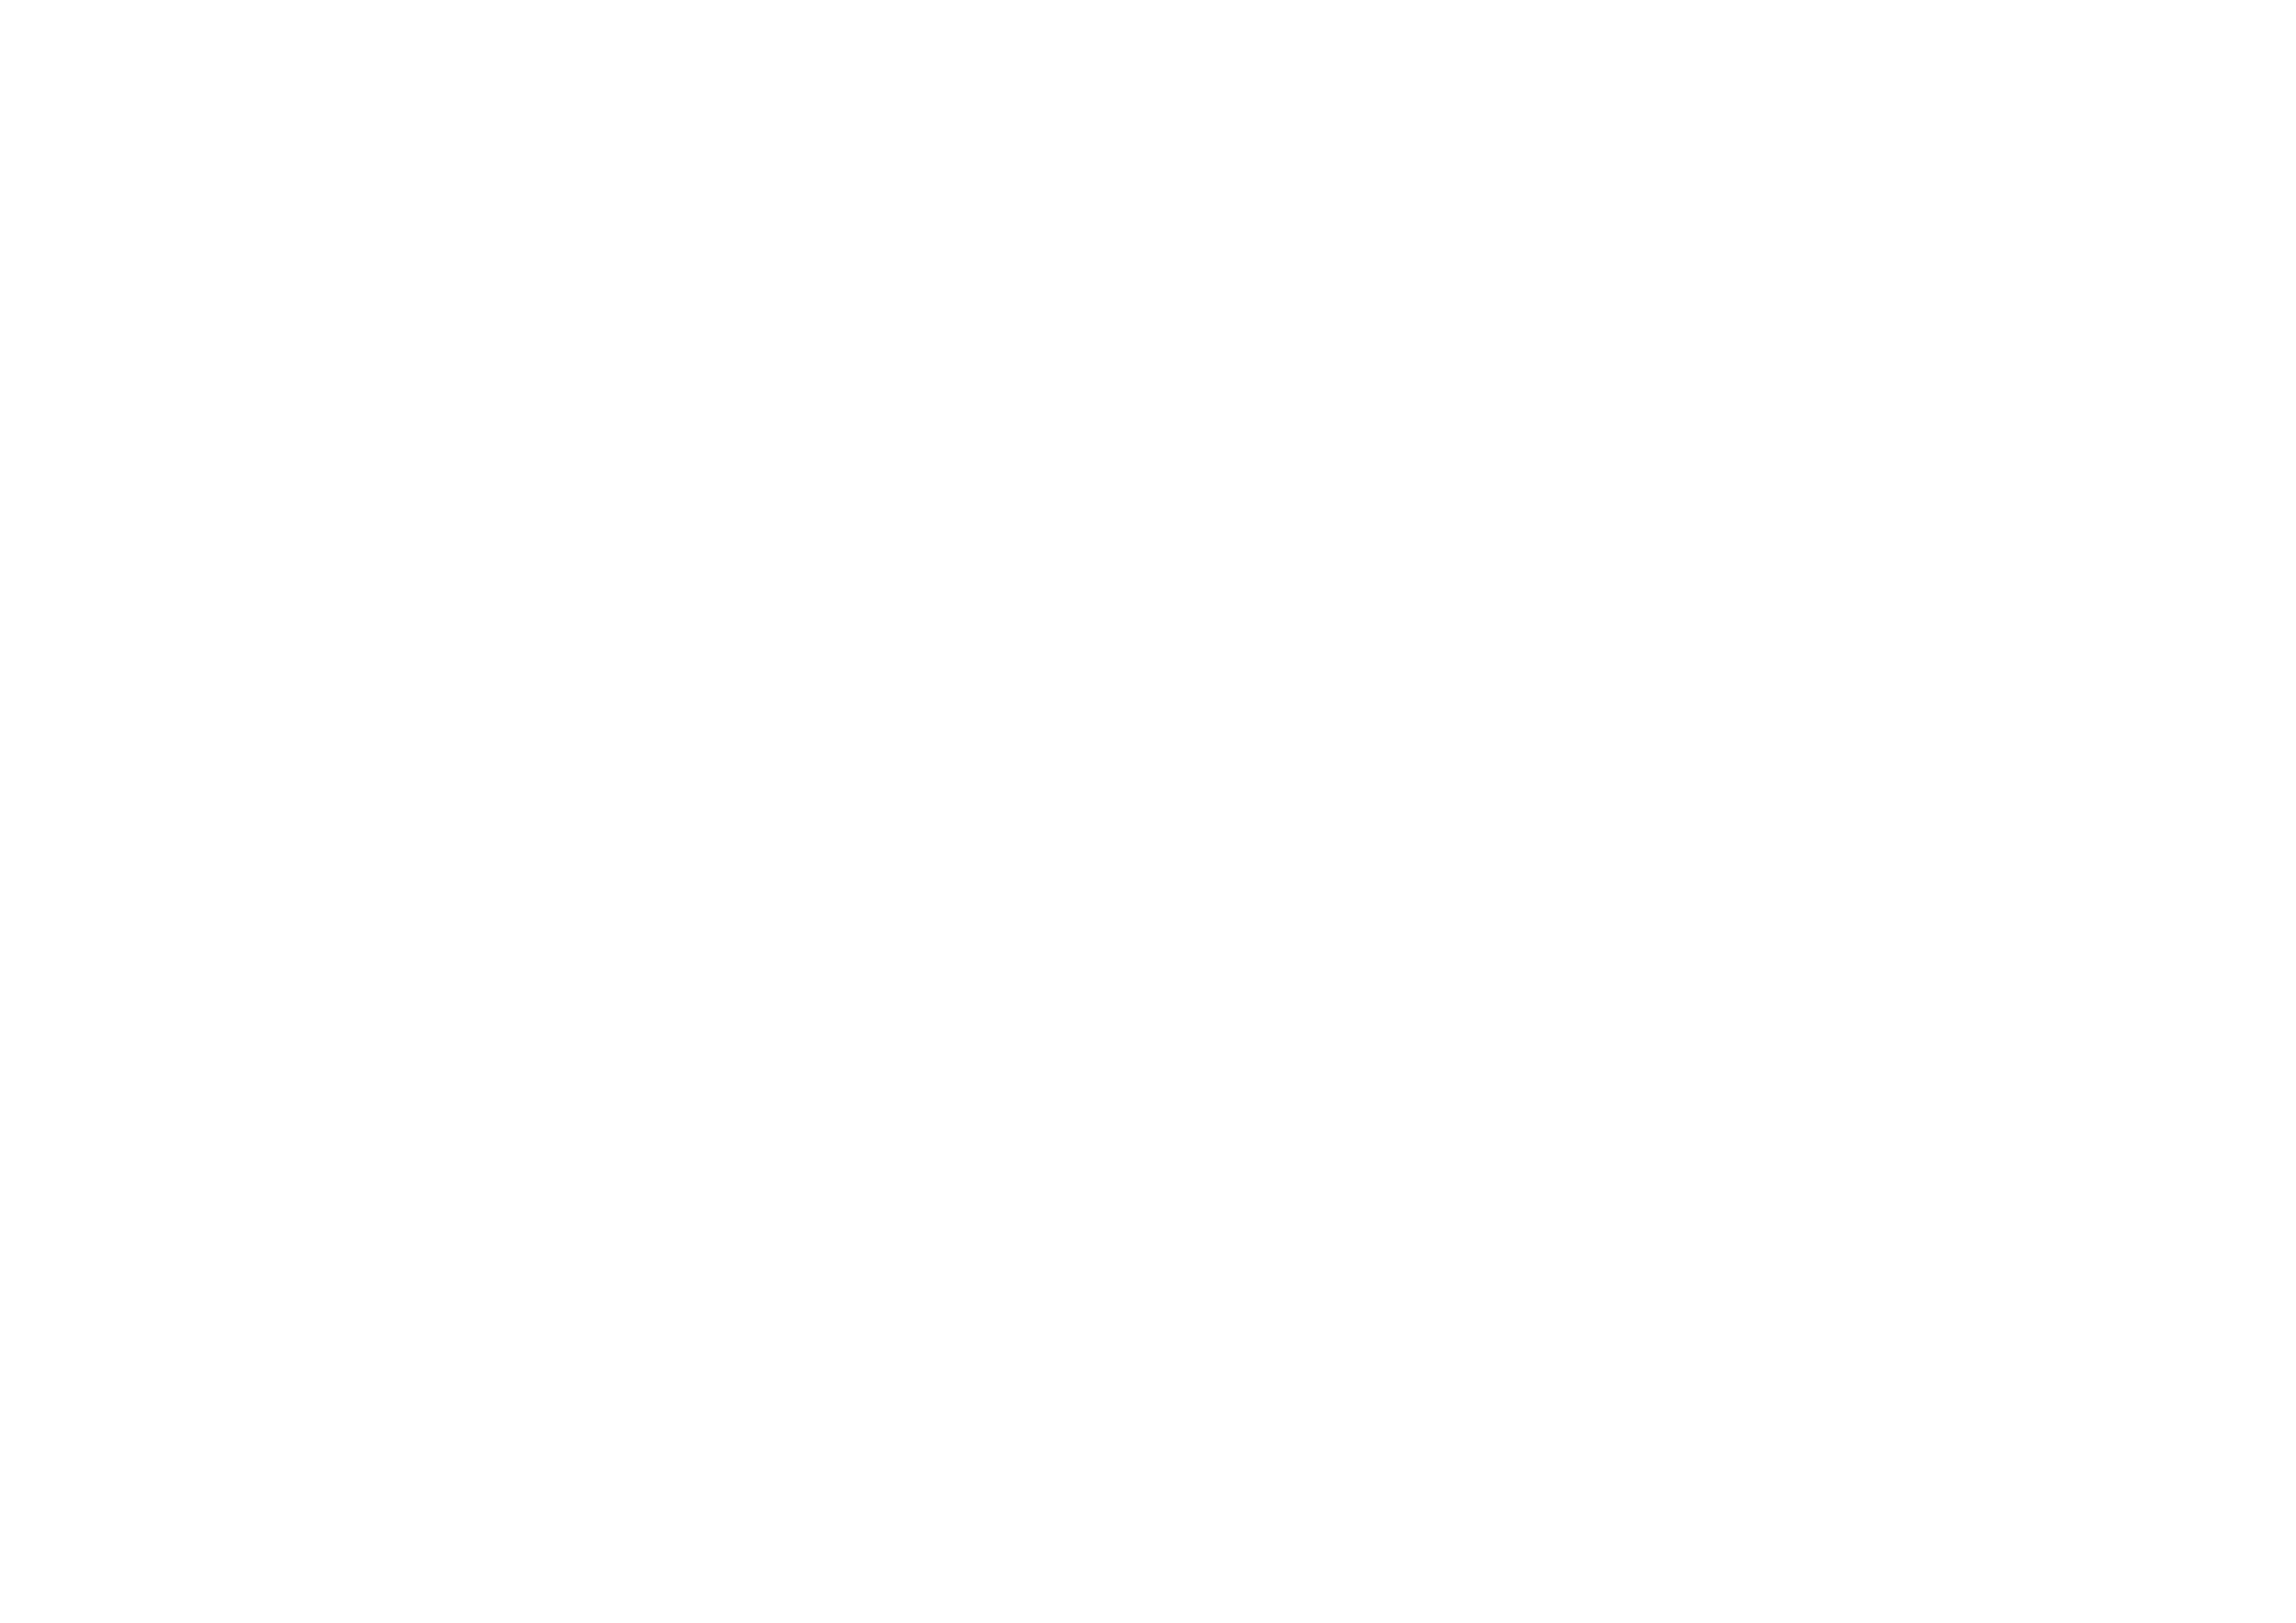 Céline Dupuy